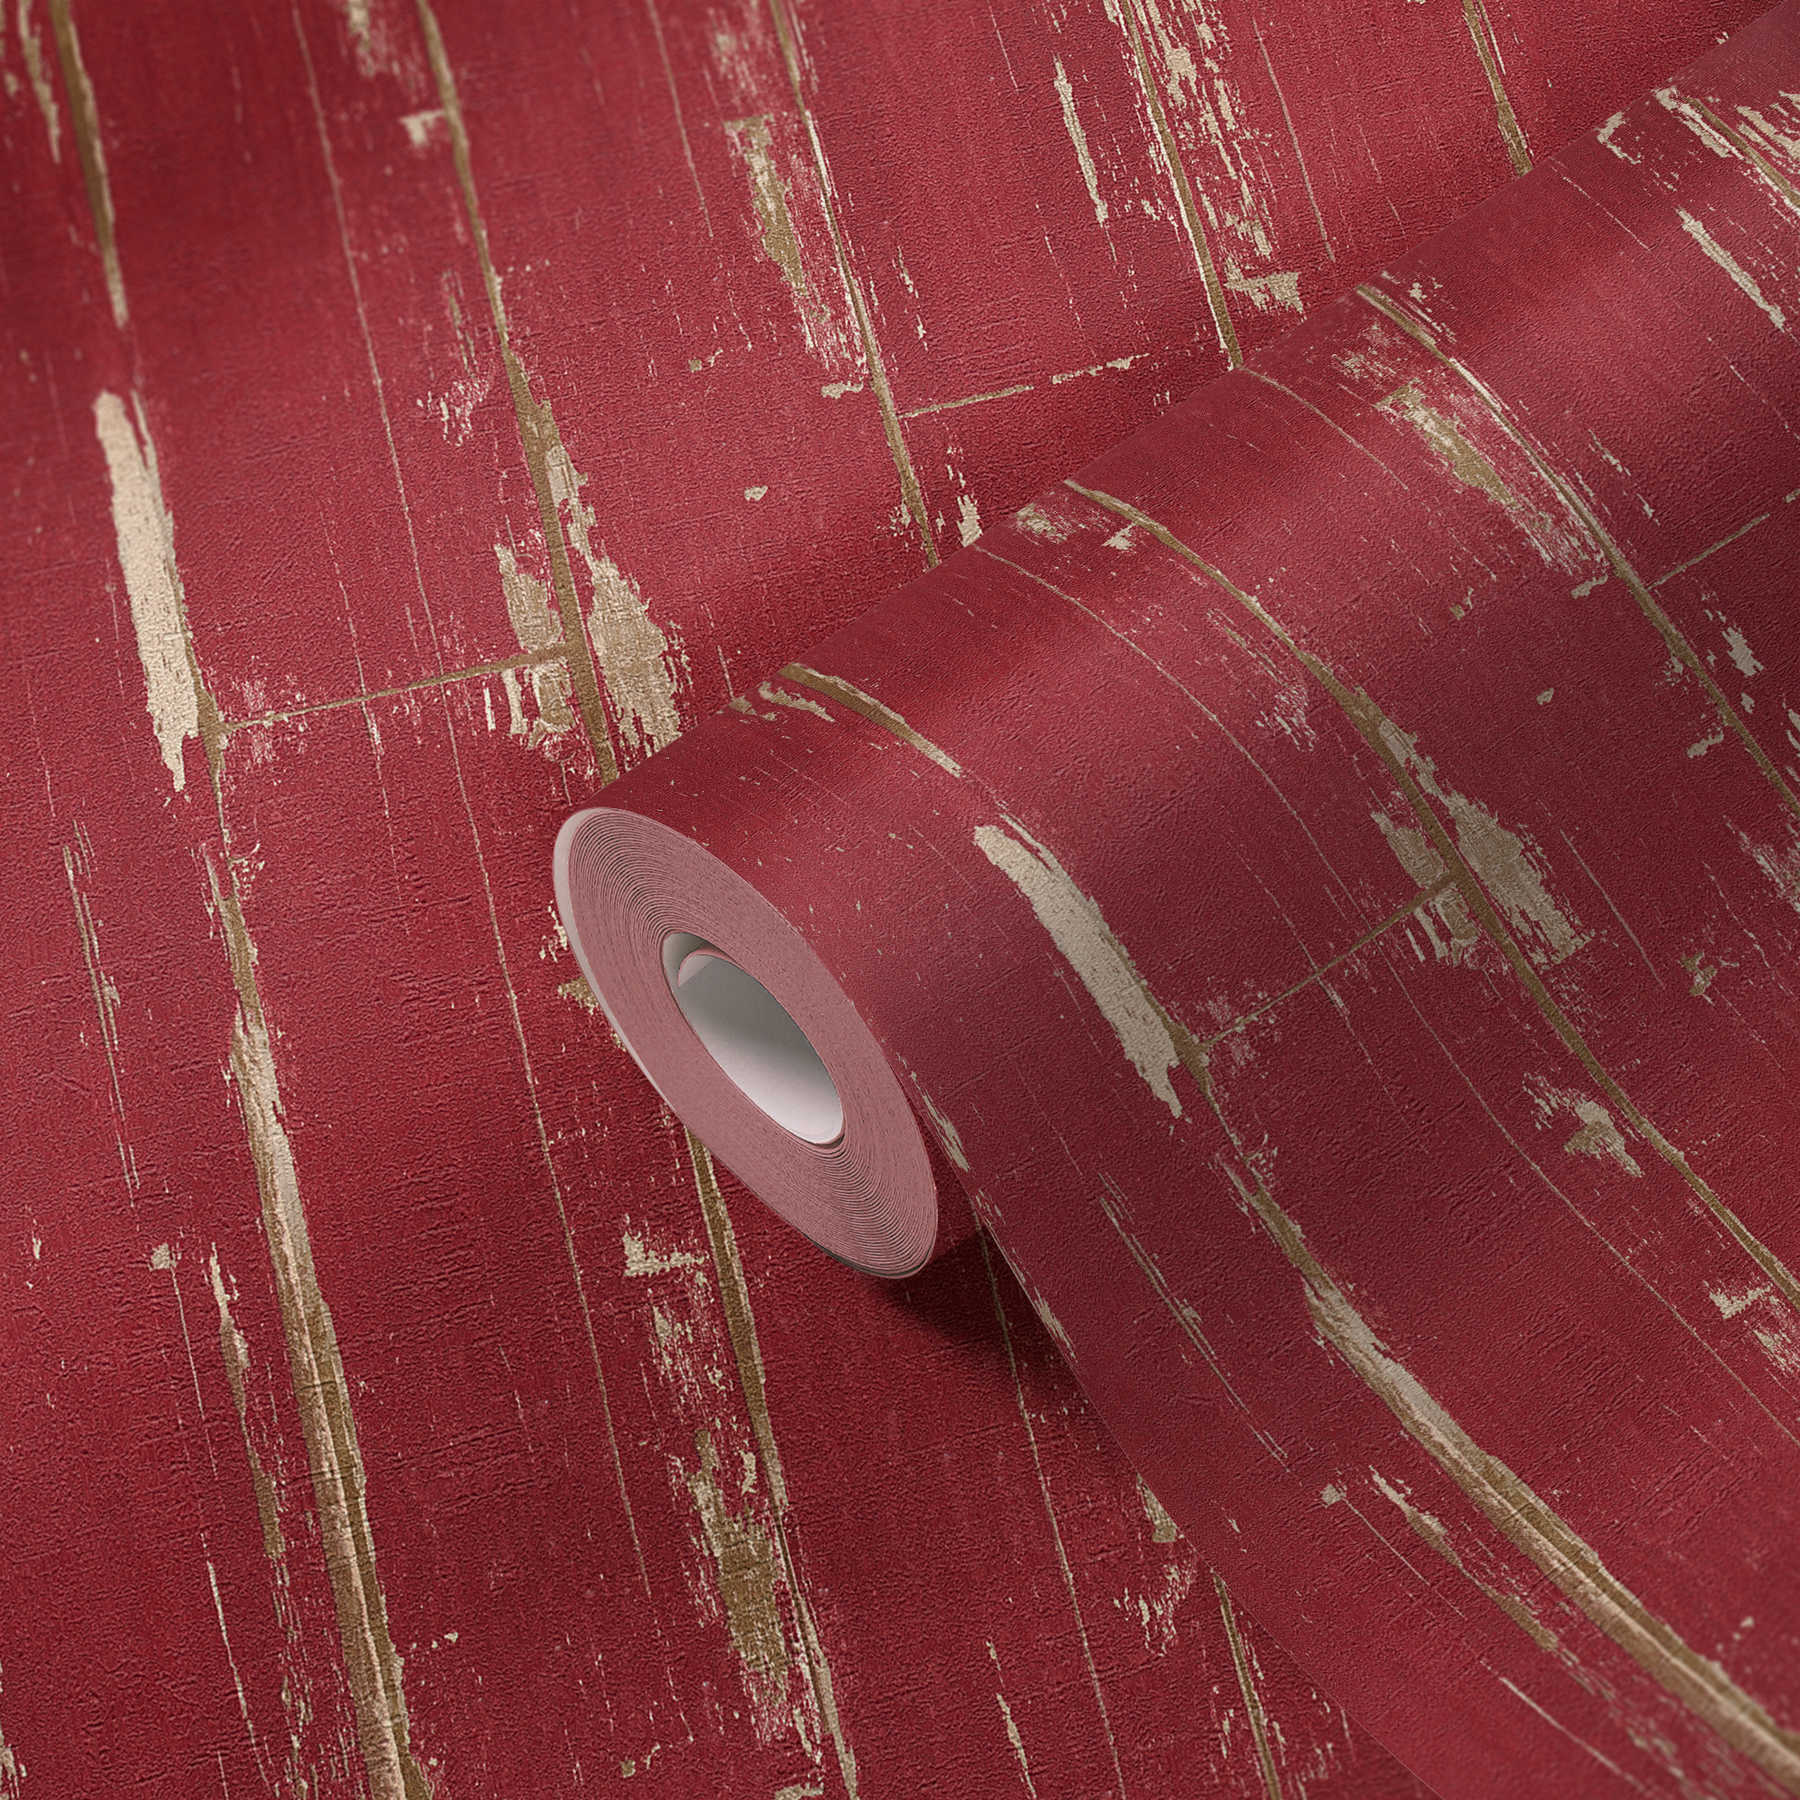             Papel pintado de madera con tablas, aspecto vintage y aspecto usado - rojo
        